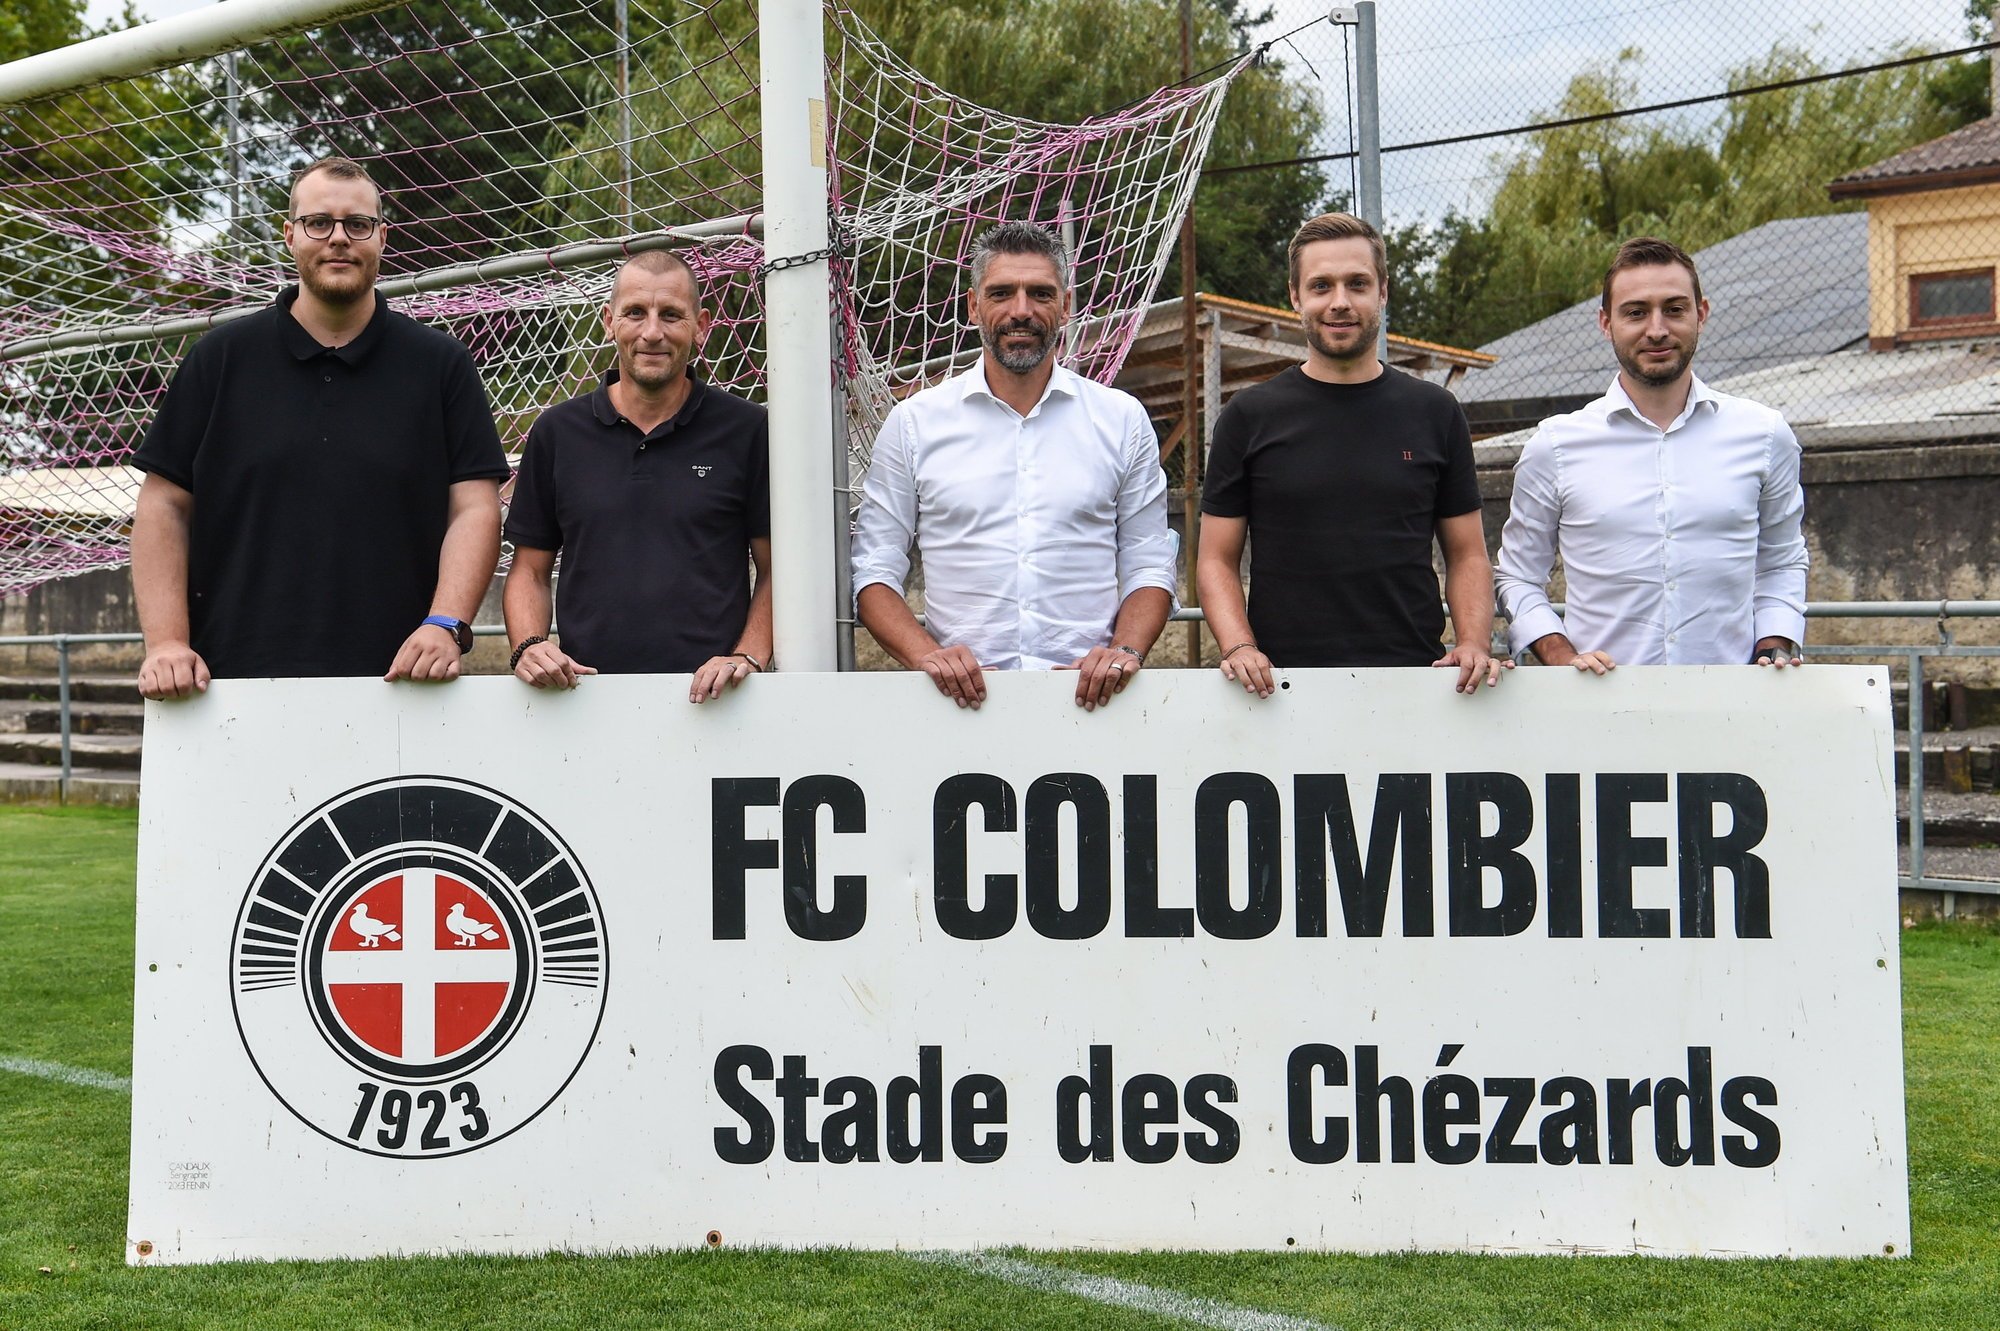 Le nouveau comité du FC Colombier: Sebastian Moser, Sébastien Pellet, Joaquim Passos, Damien Rossier et Alex Santos.